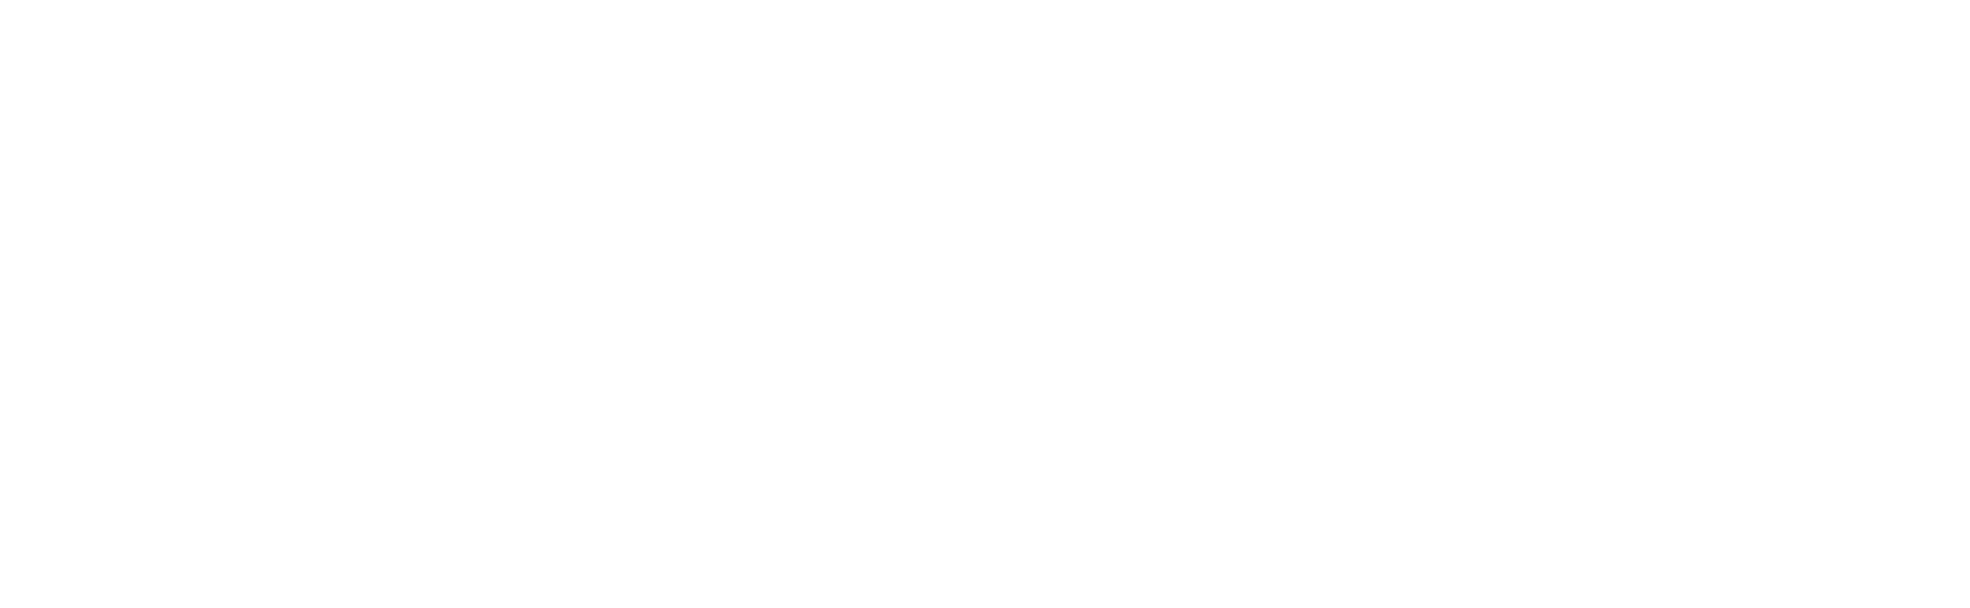 Uncle Walts Band